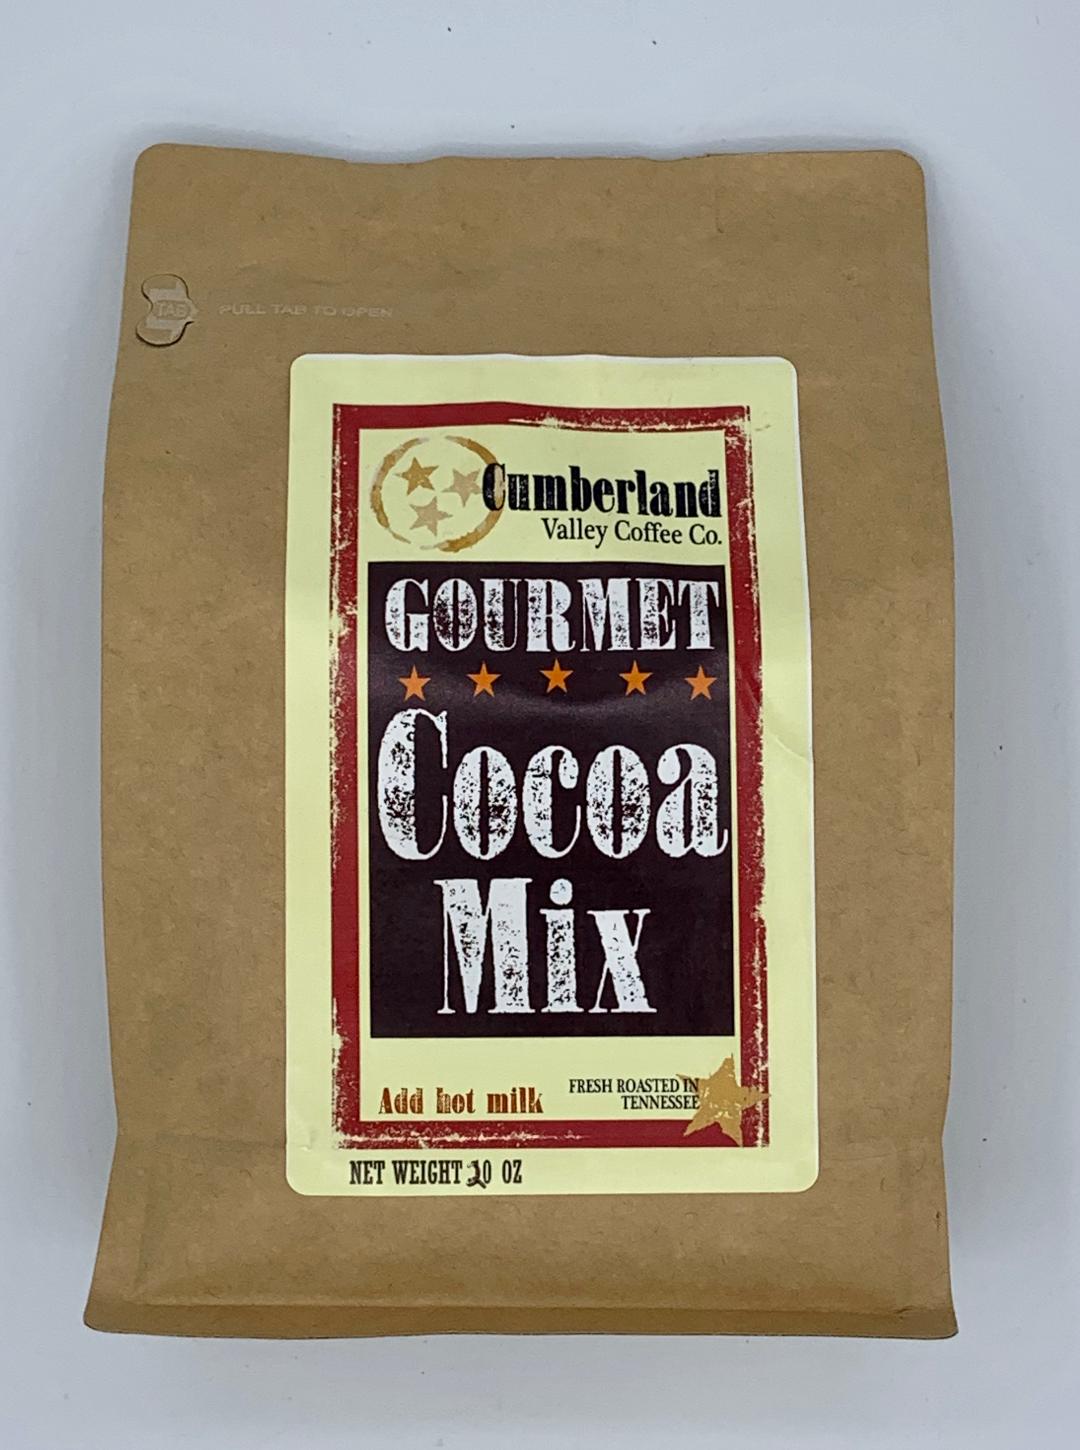 Gourmet Cocoa Mix